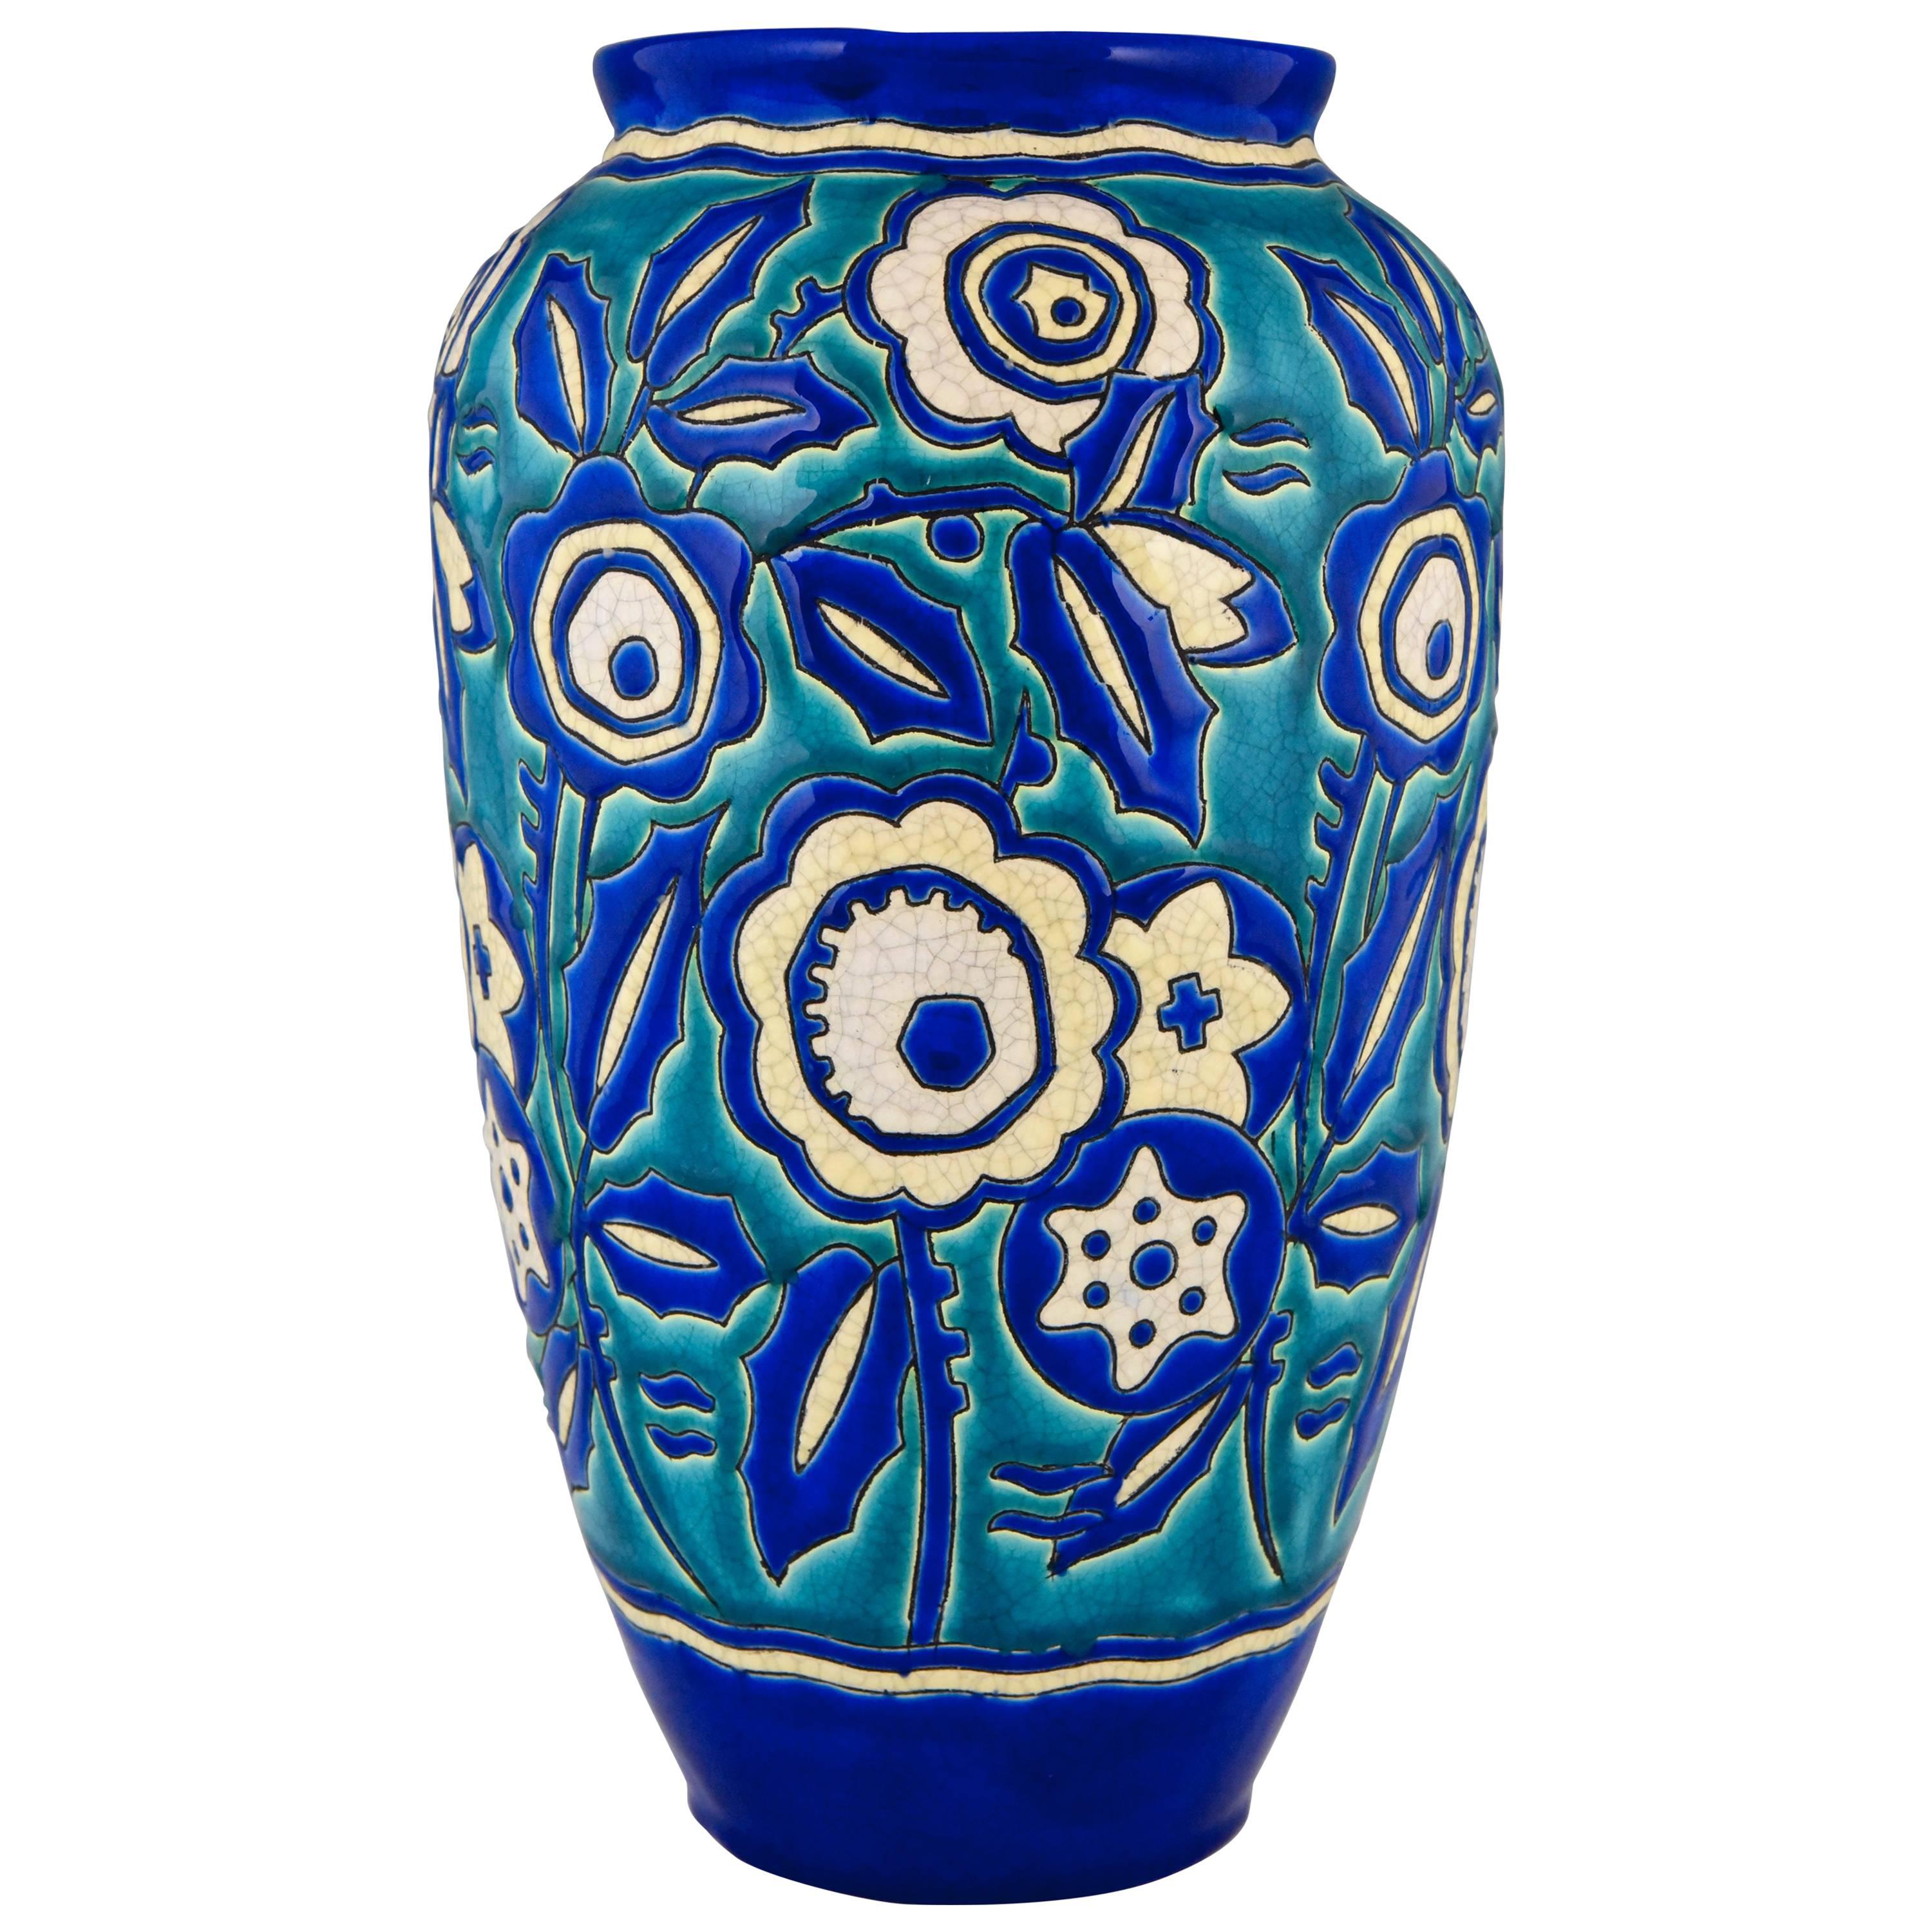 Art Deco Ceramic Vase with Flowers by Keramis, Belgium, 1929